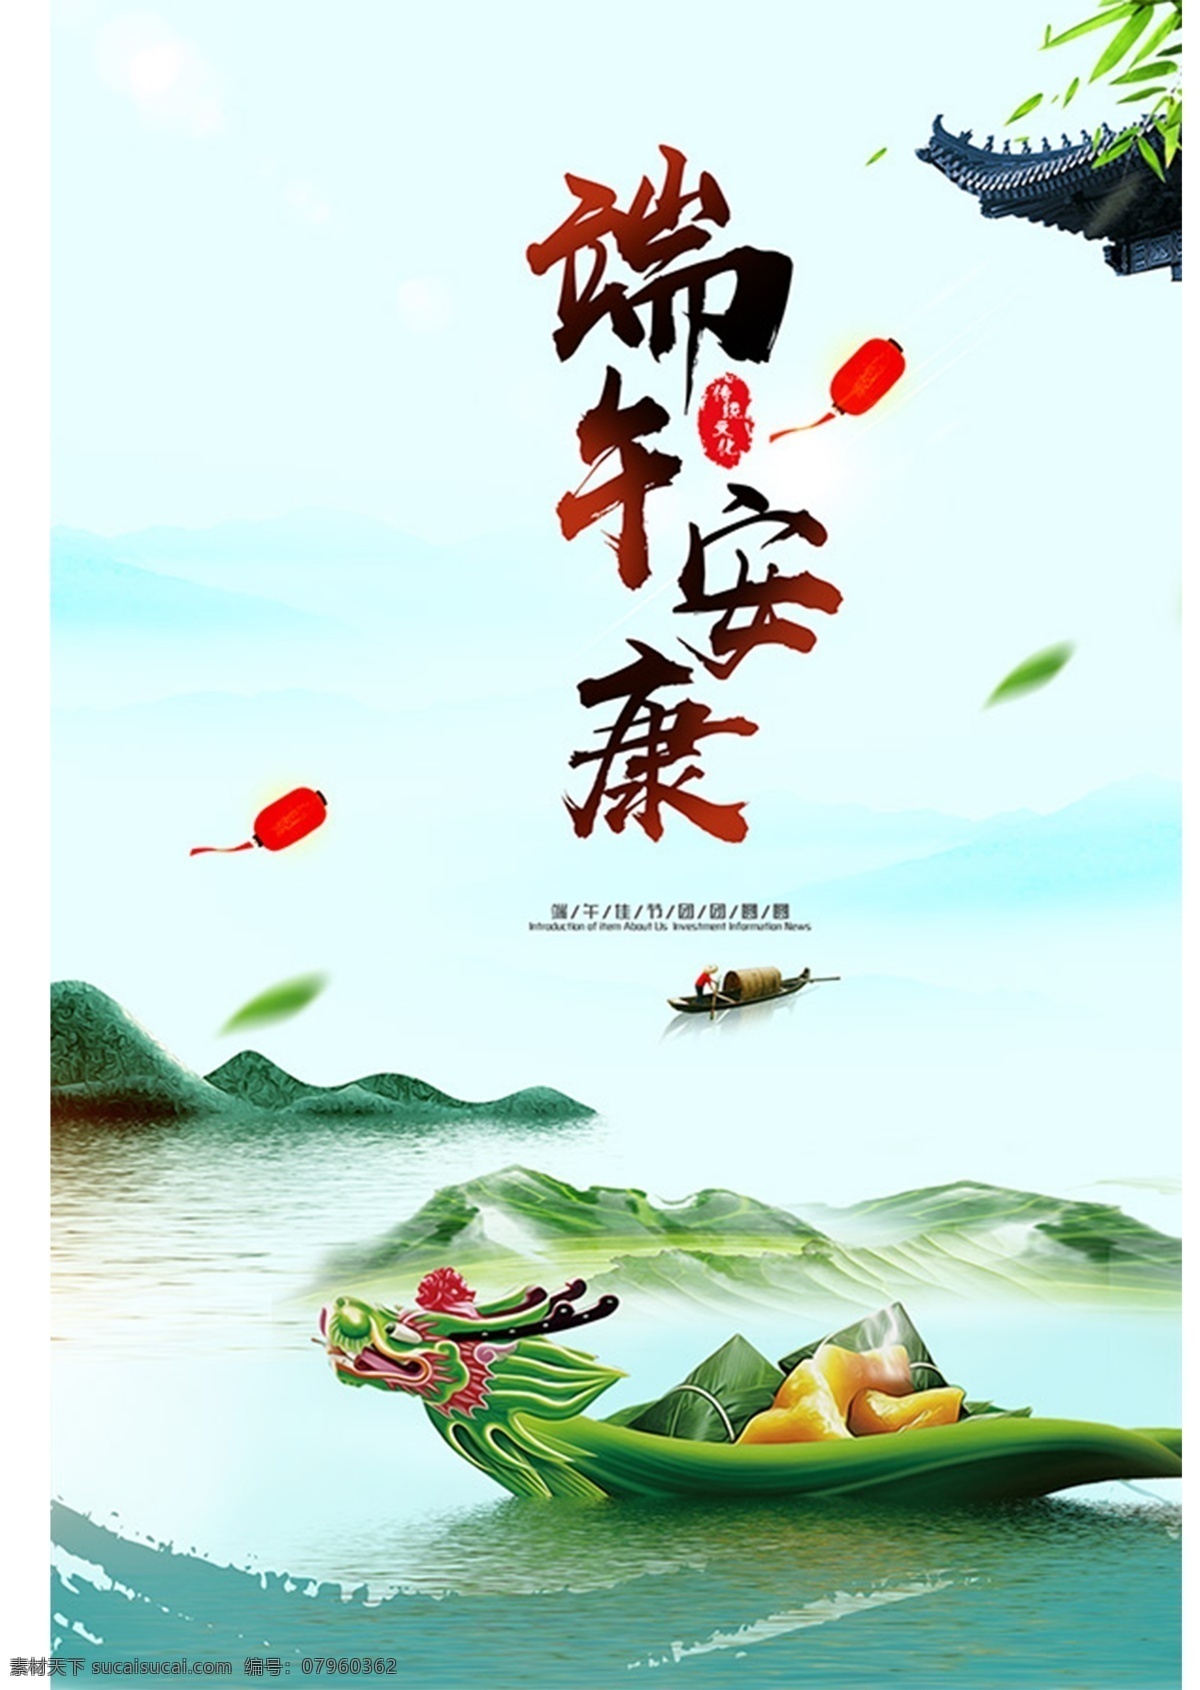 端午海报 端午安康 端午 端午佳节 五月初五 中国传统 粽子 龙舟端午节 分层